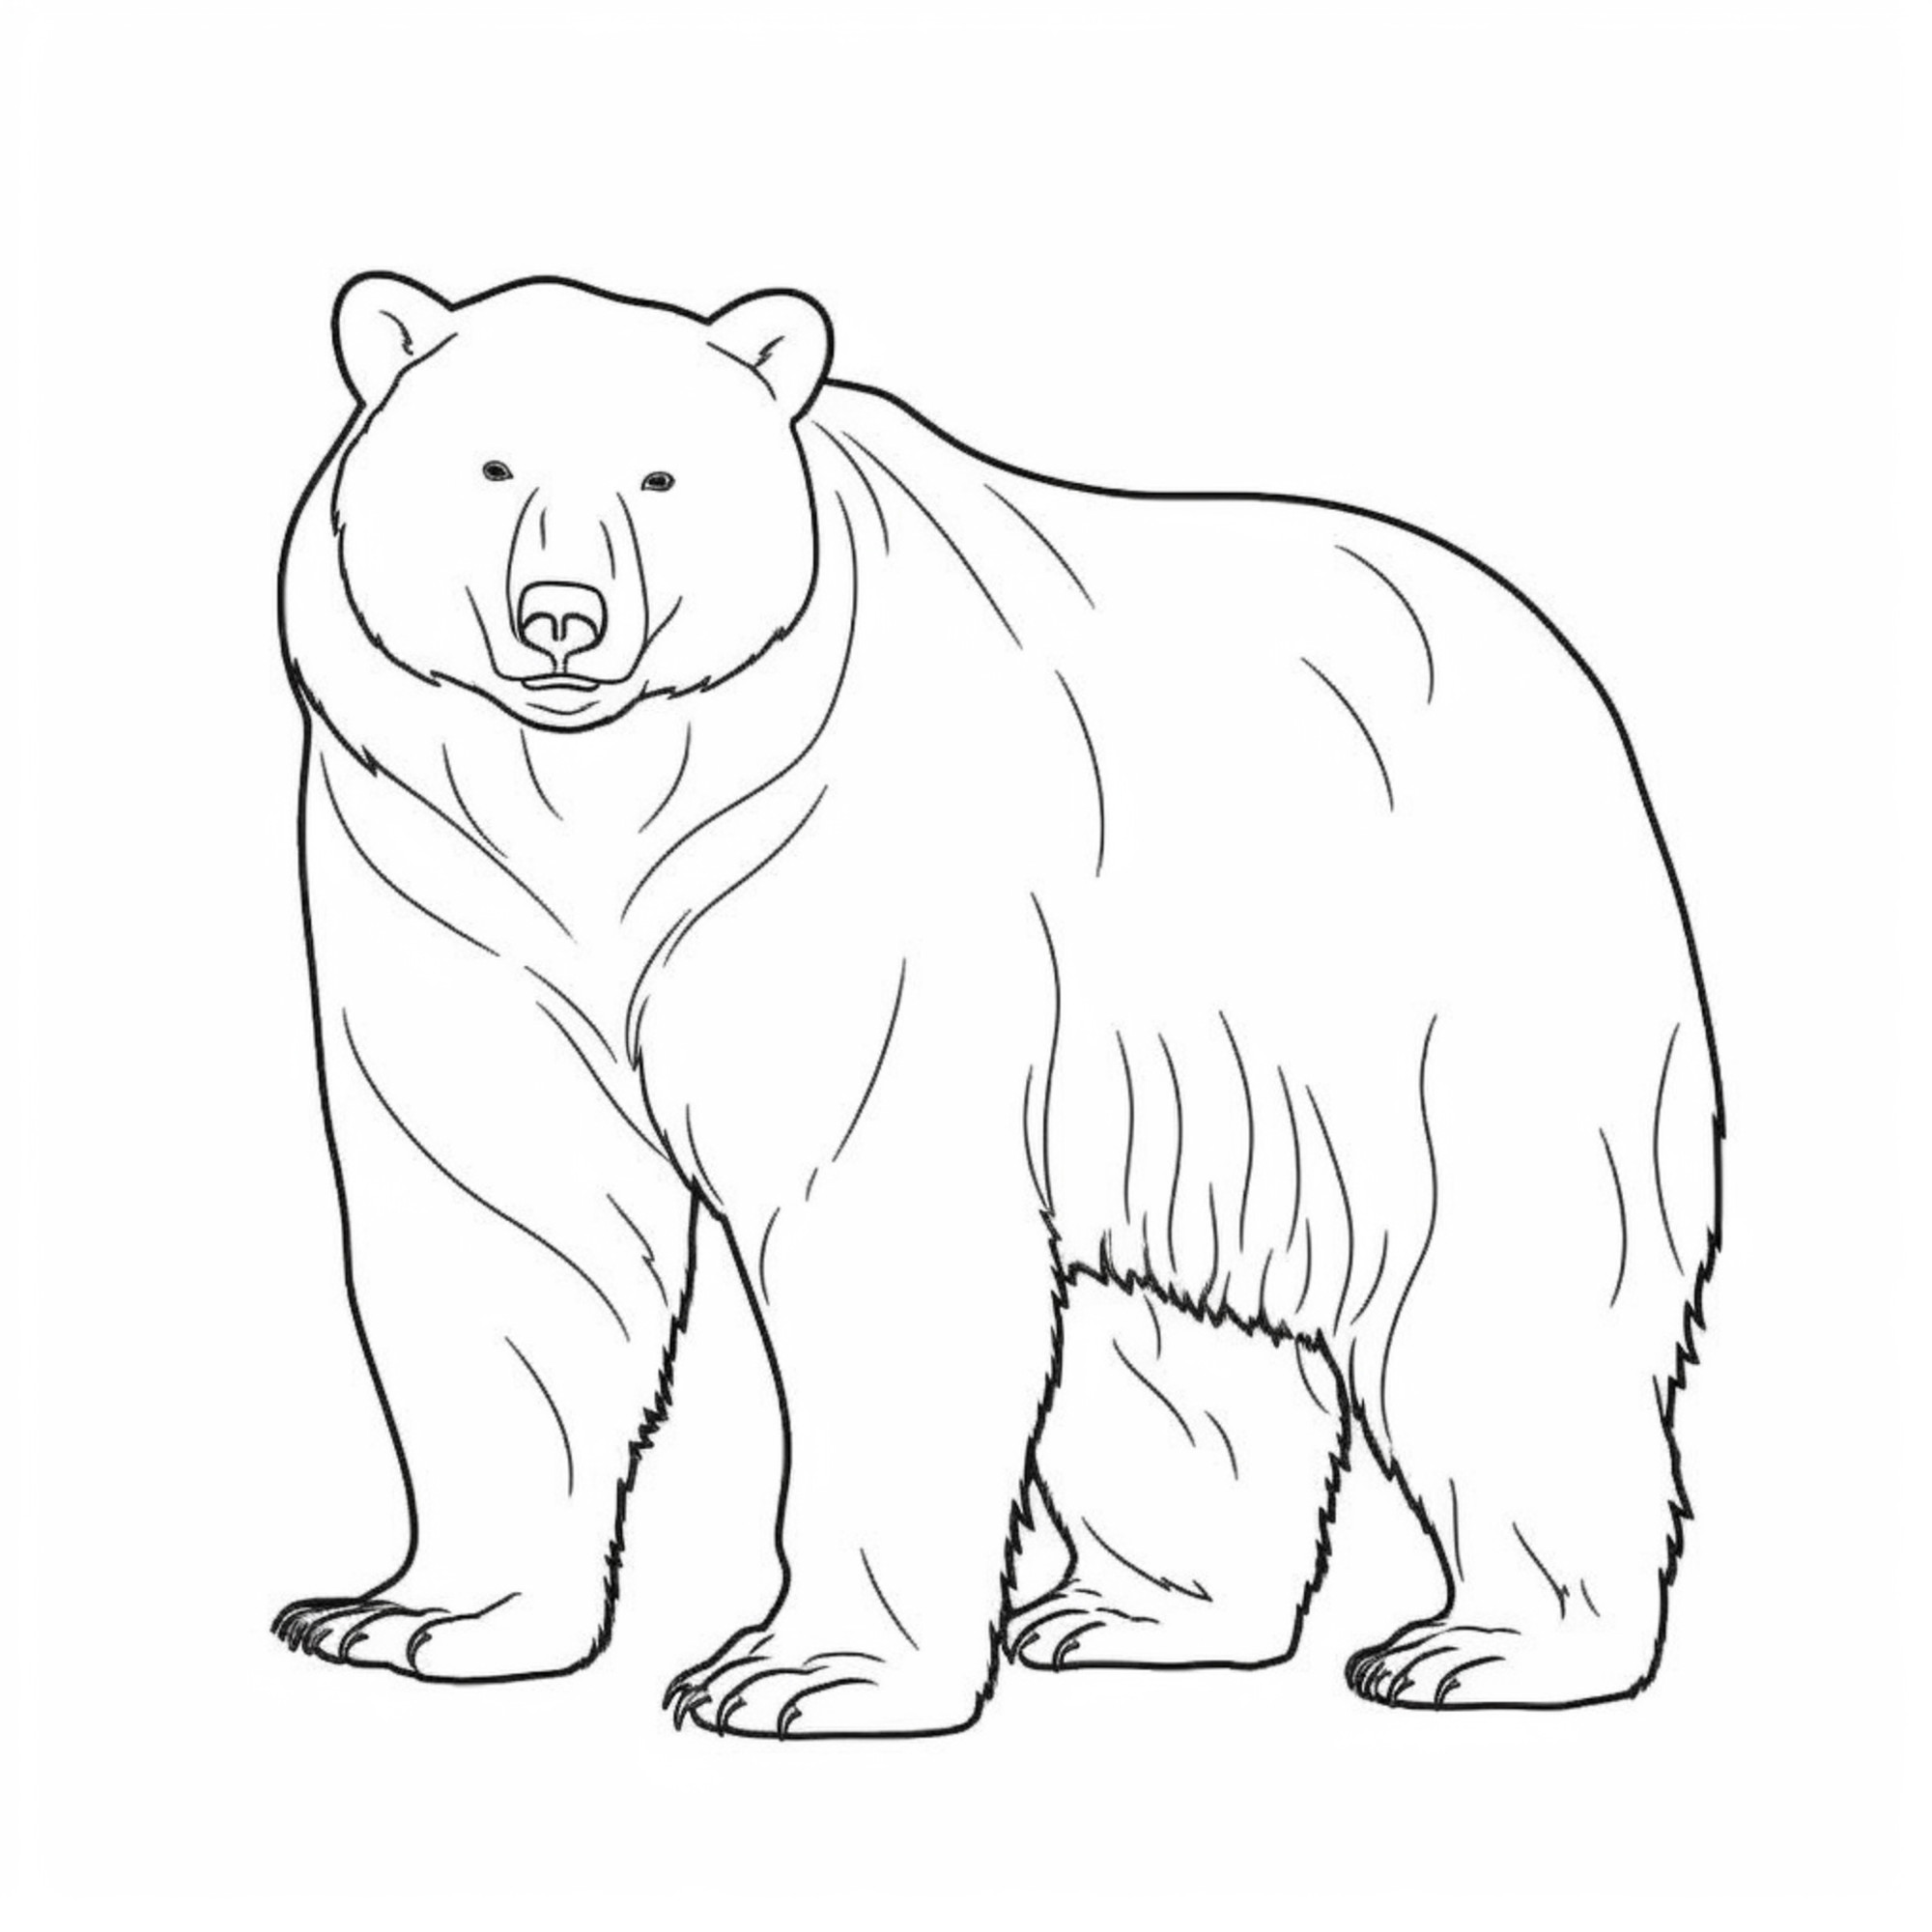 Раскраска для детей: огромный взрослый медведь